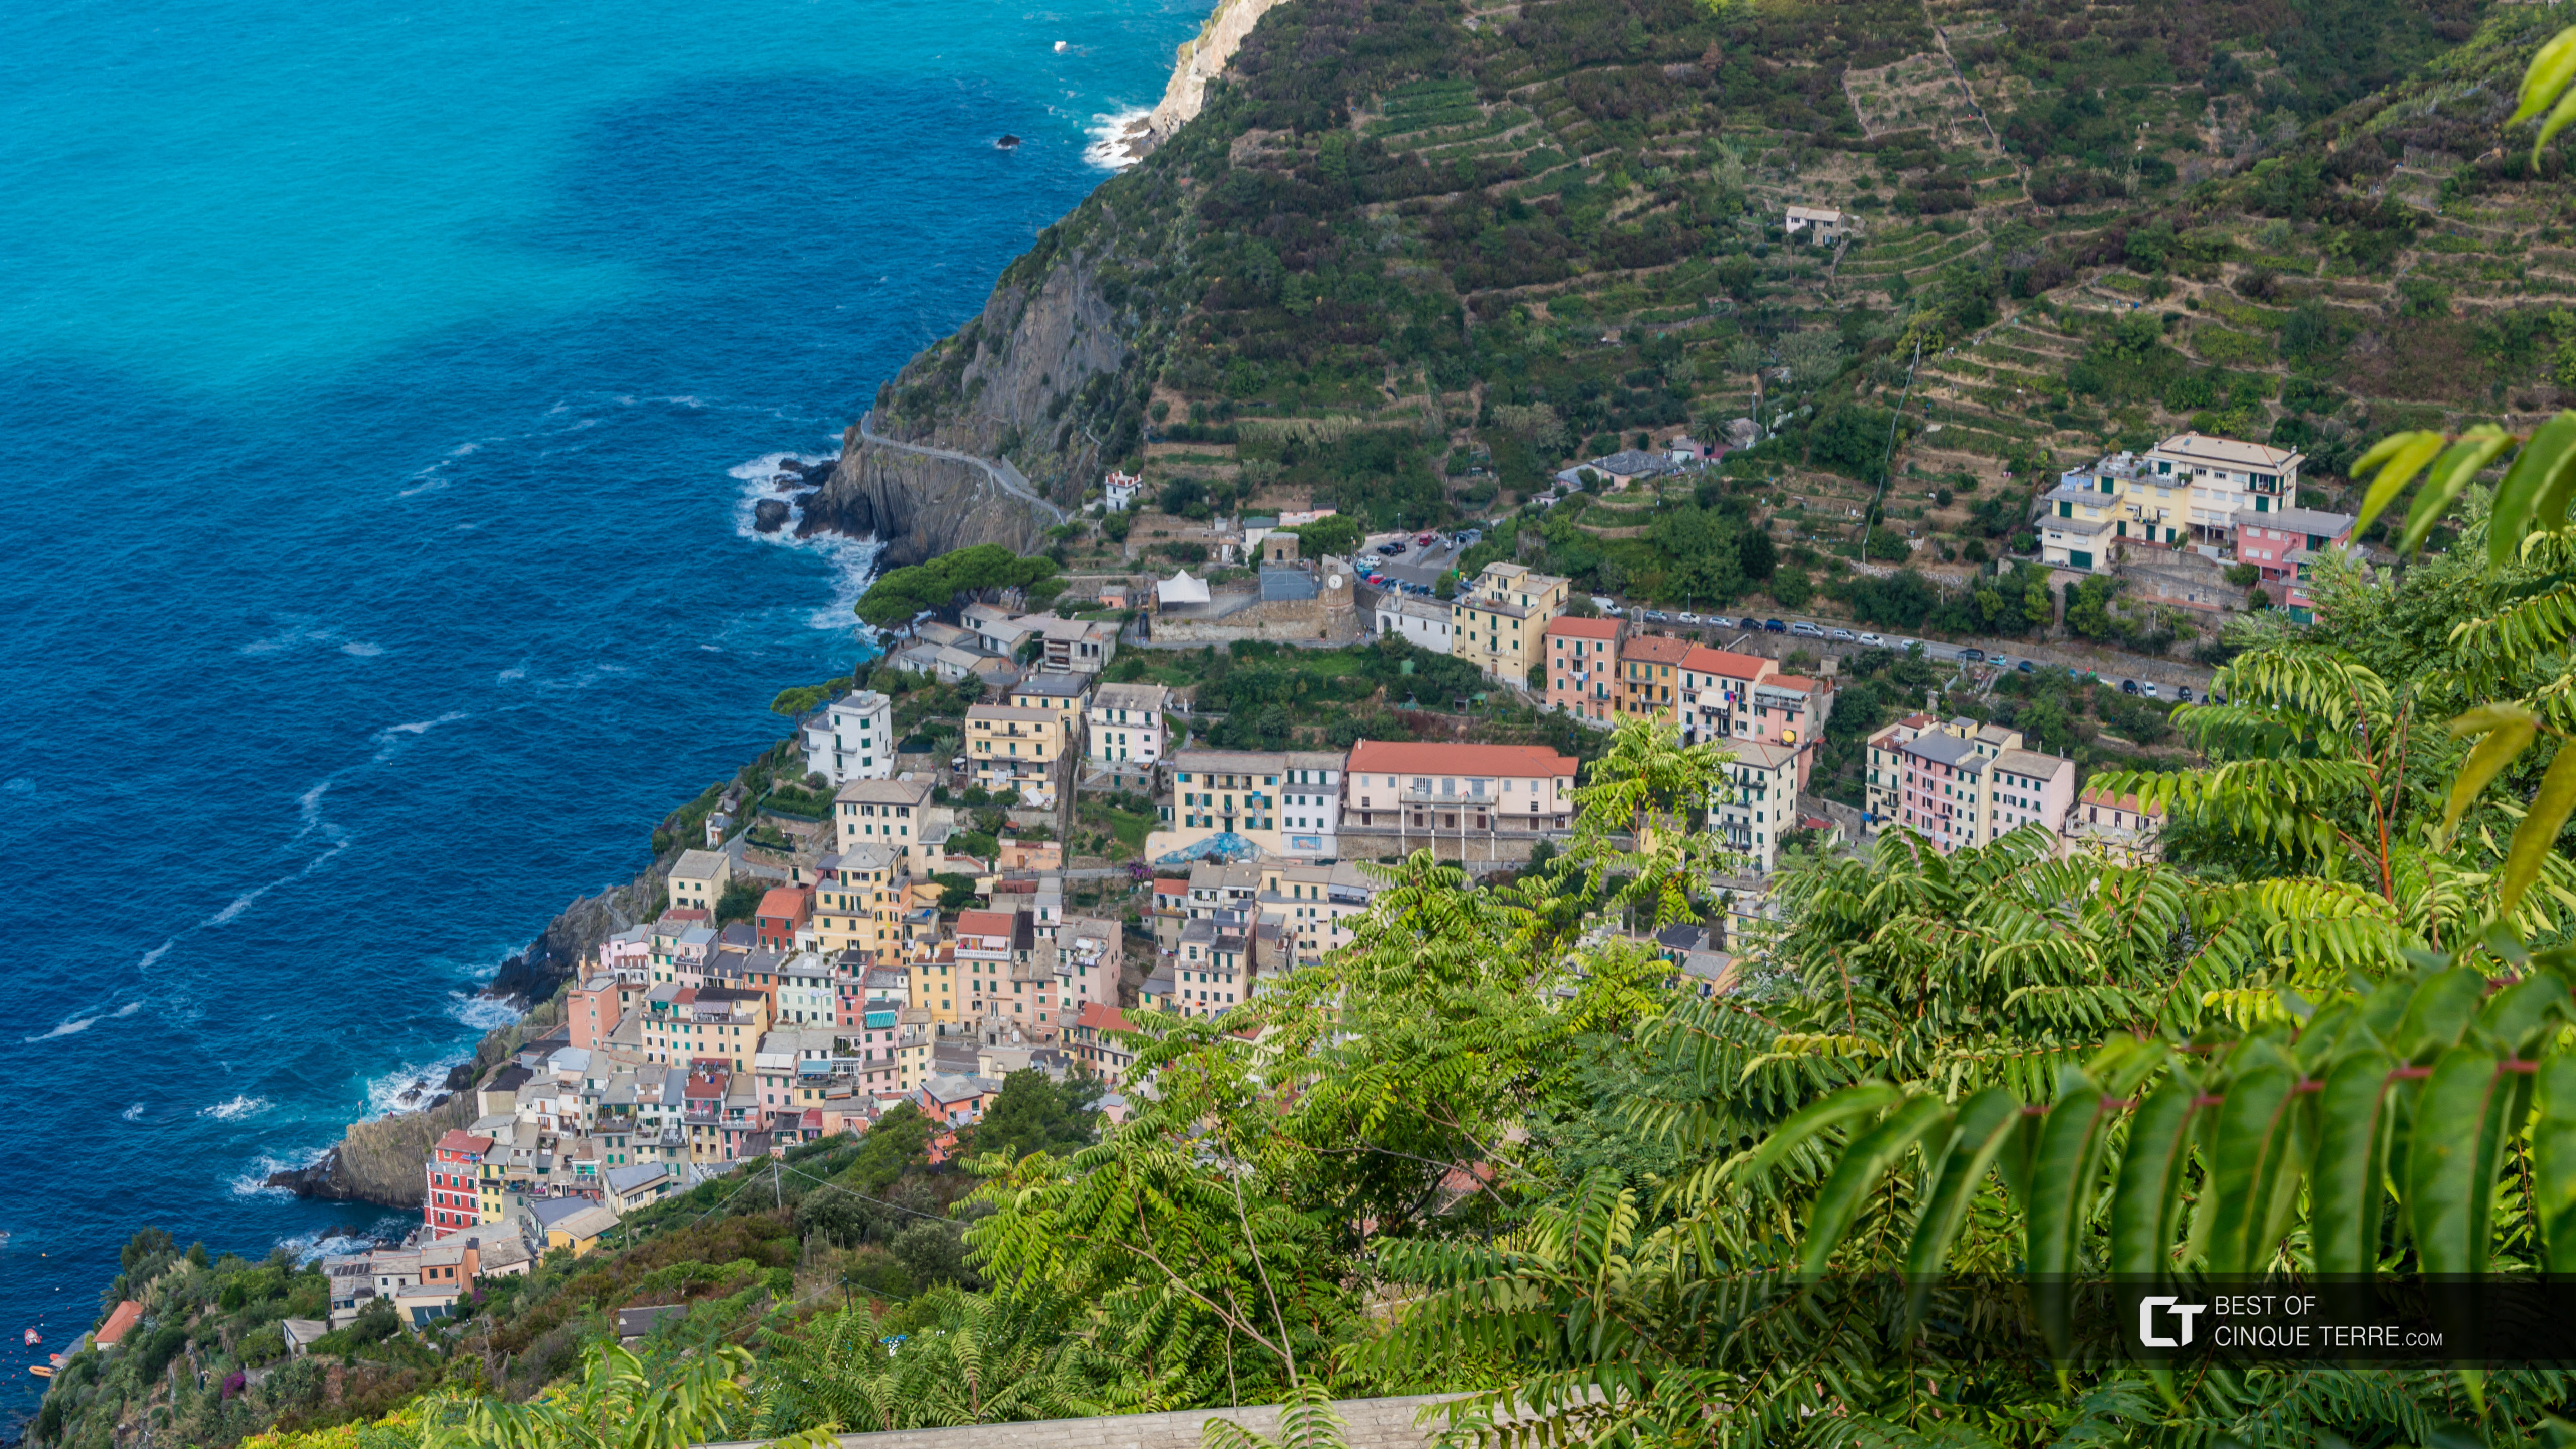 Blick auf das Dorf vom Wanderweg nach der Wallfahrtskirche Montenero, Riomaggiore, Cinque Terre, Italien